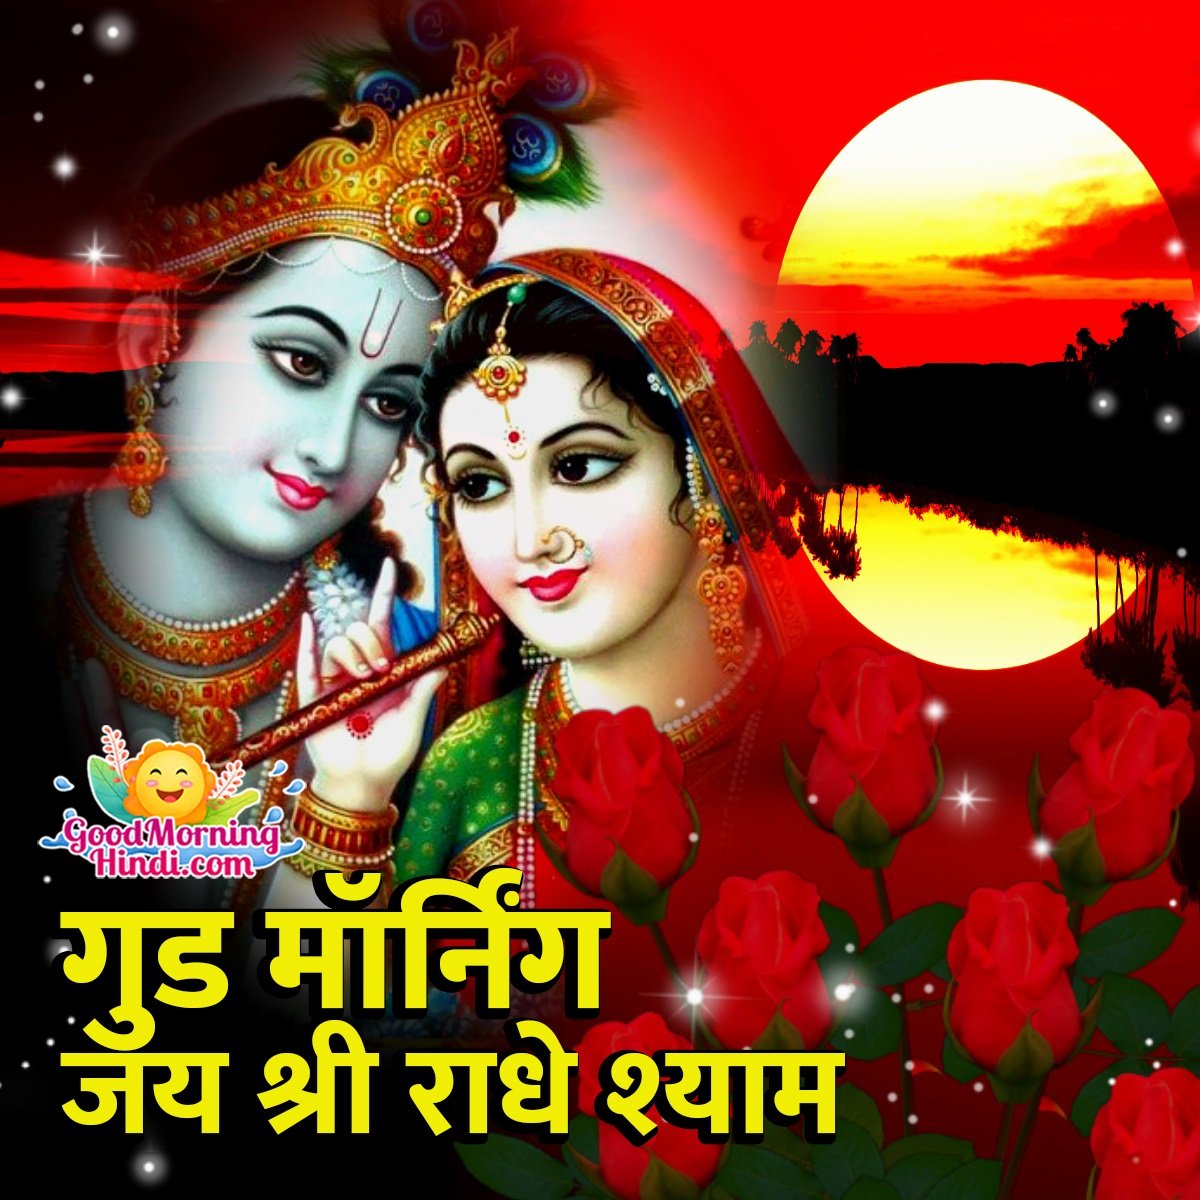 Good Morning Jai Shri Radhe Shyam